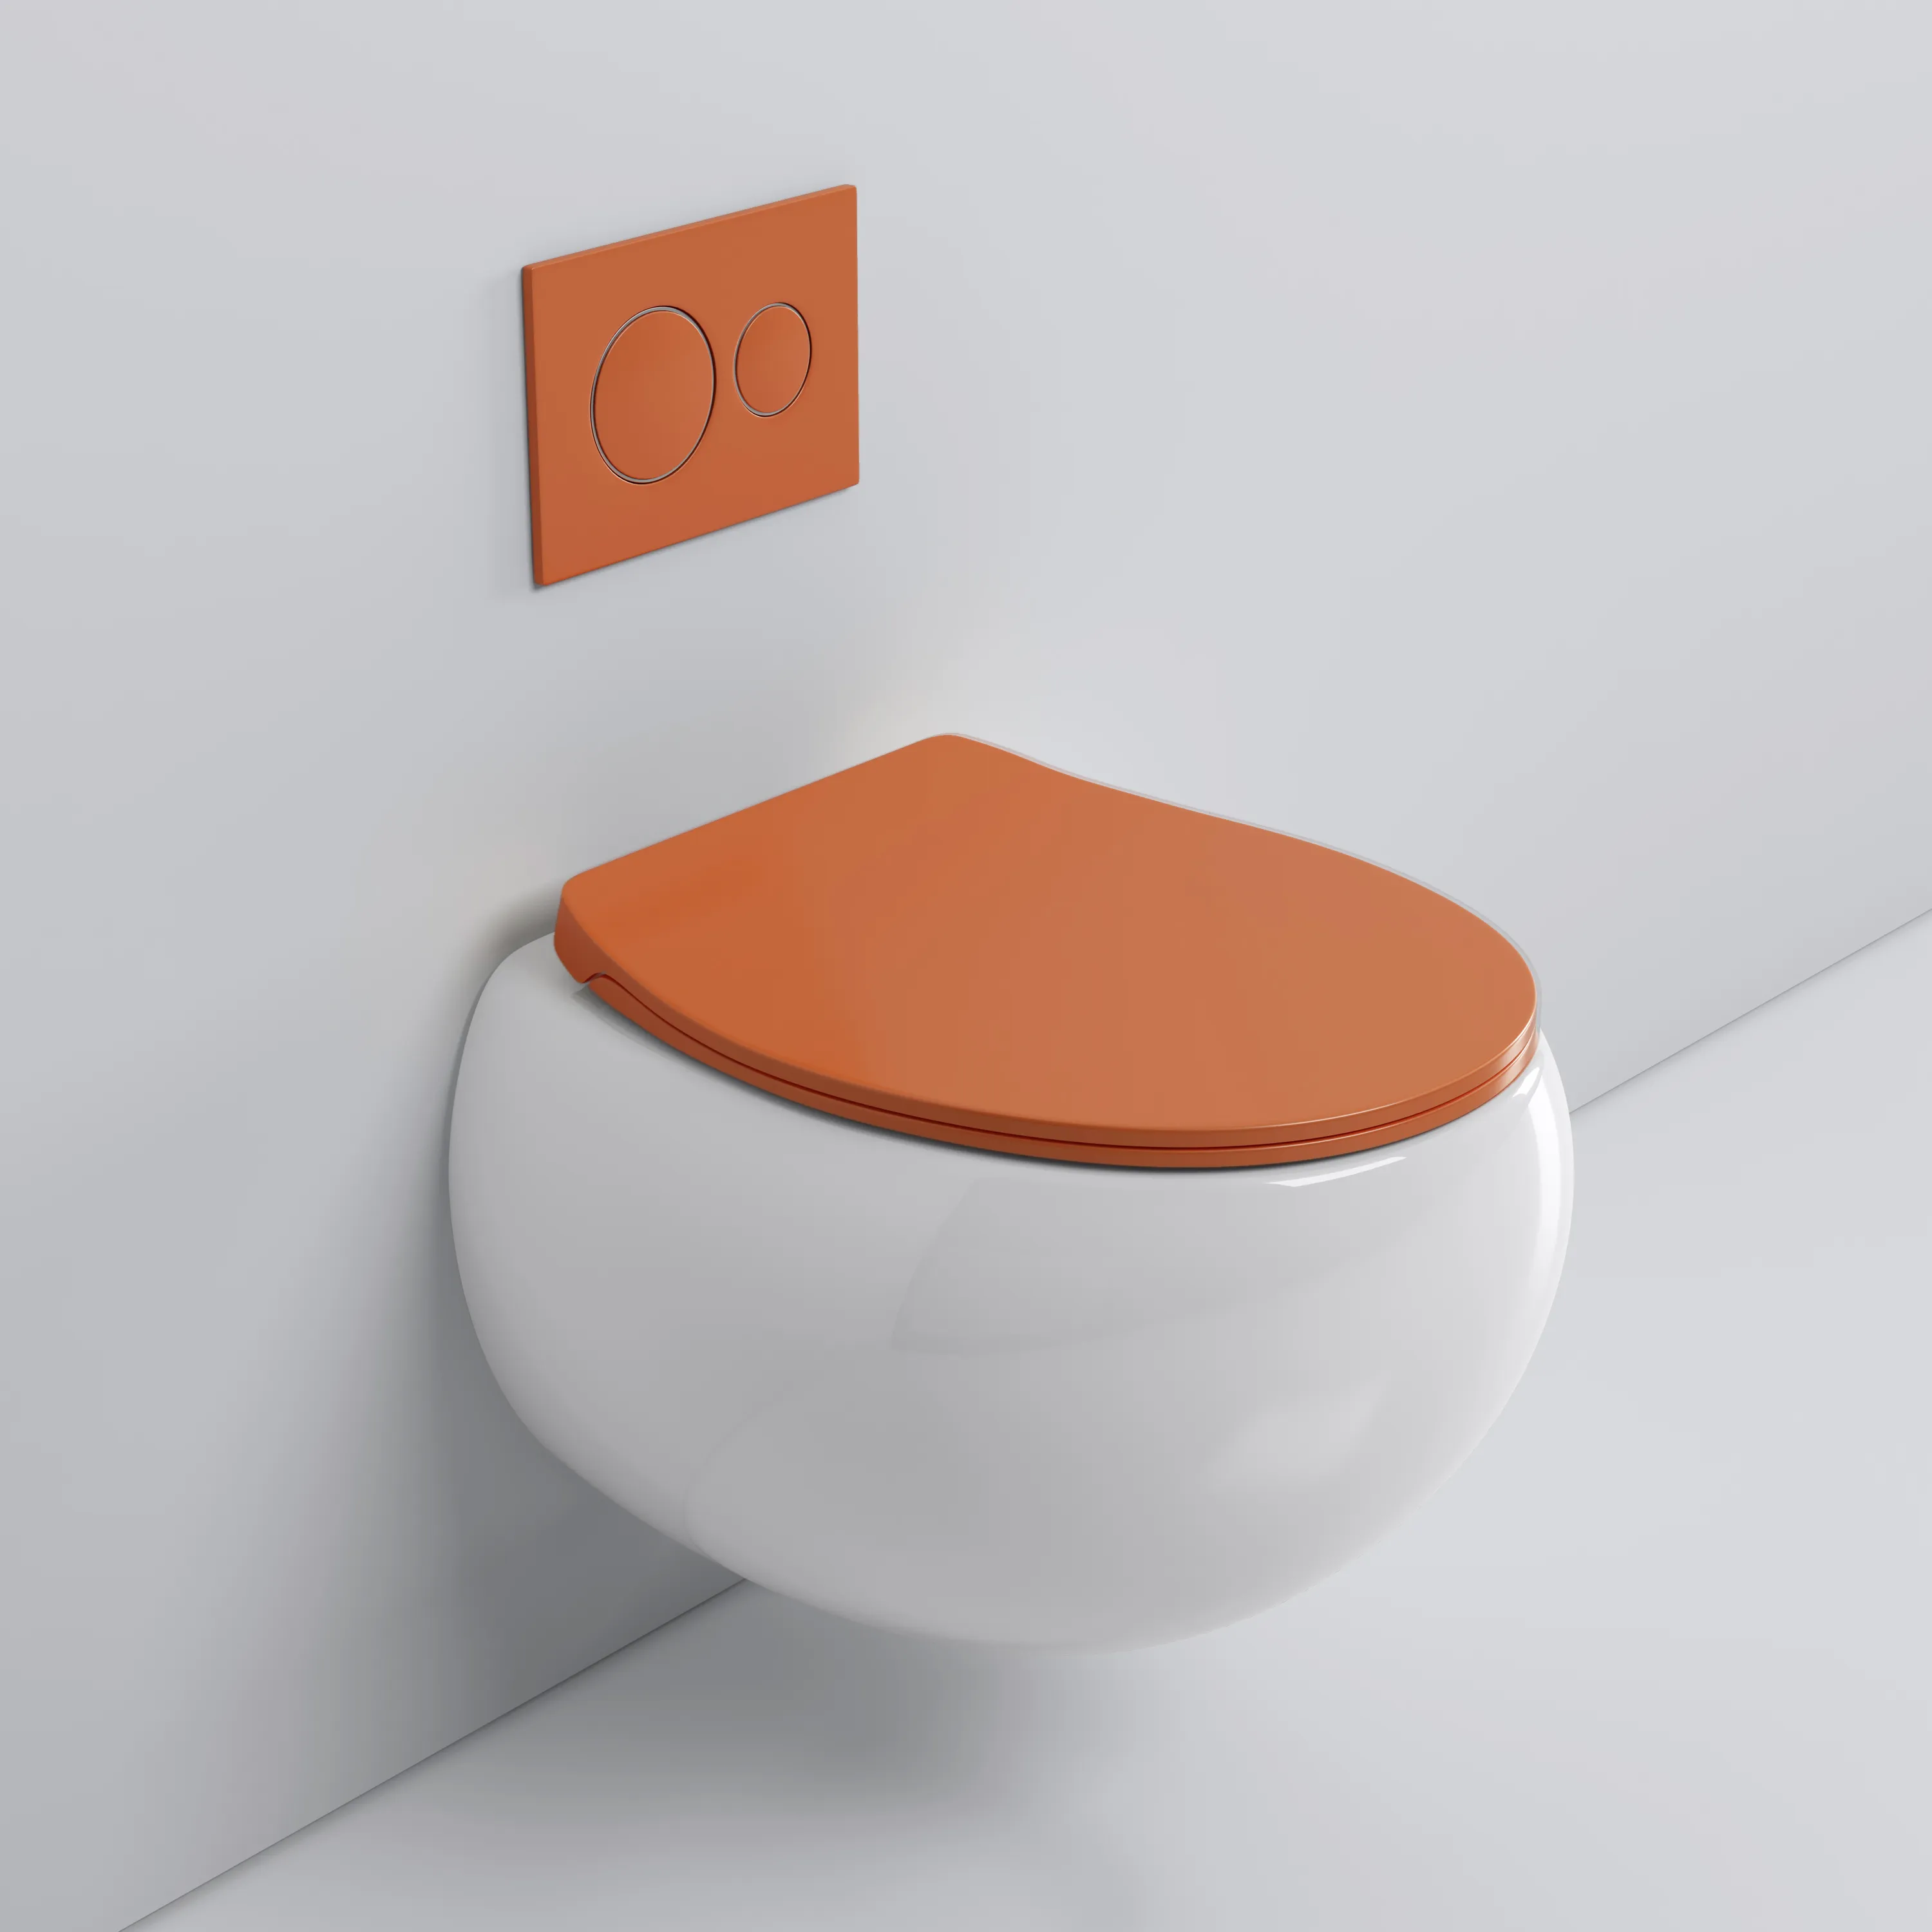 Schöne neue kommende orange Farbe moderne Wandbehang Toiletten pfanne runde Form randlose Wand WC montiert